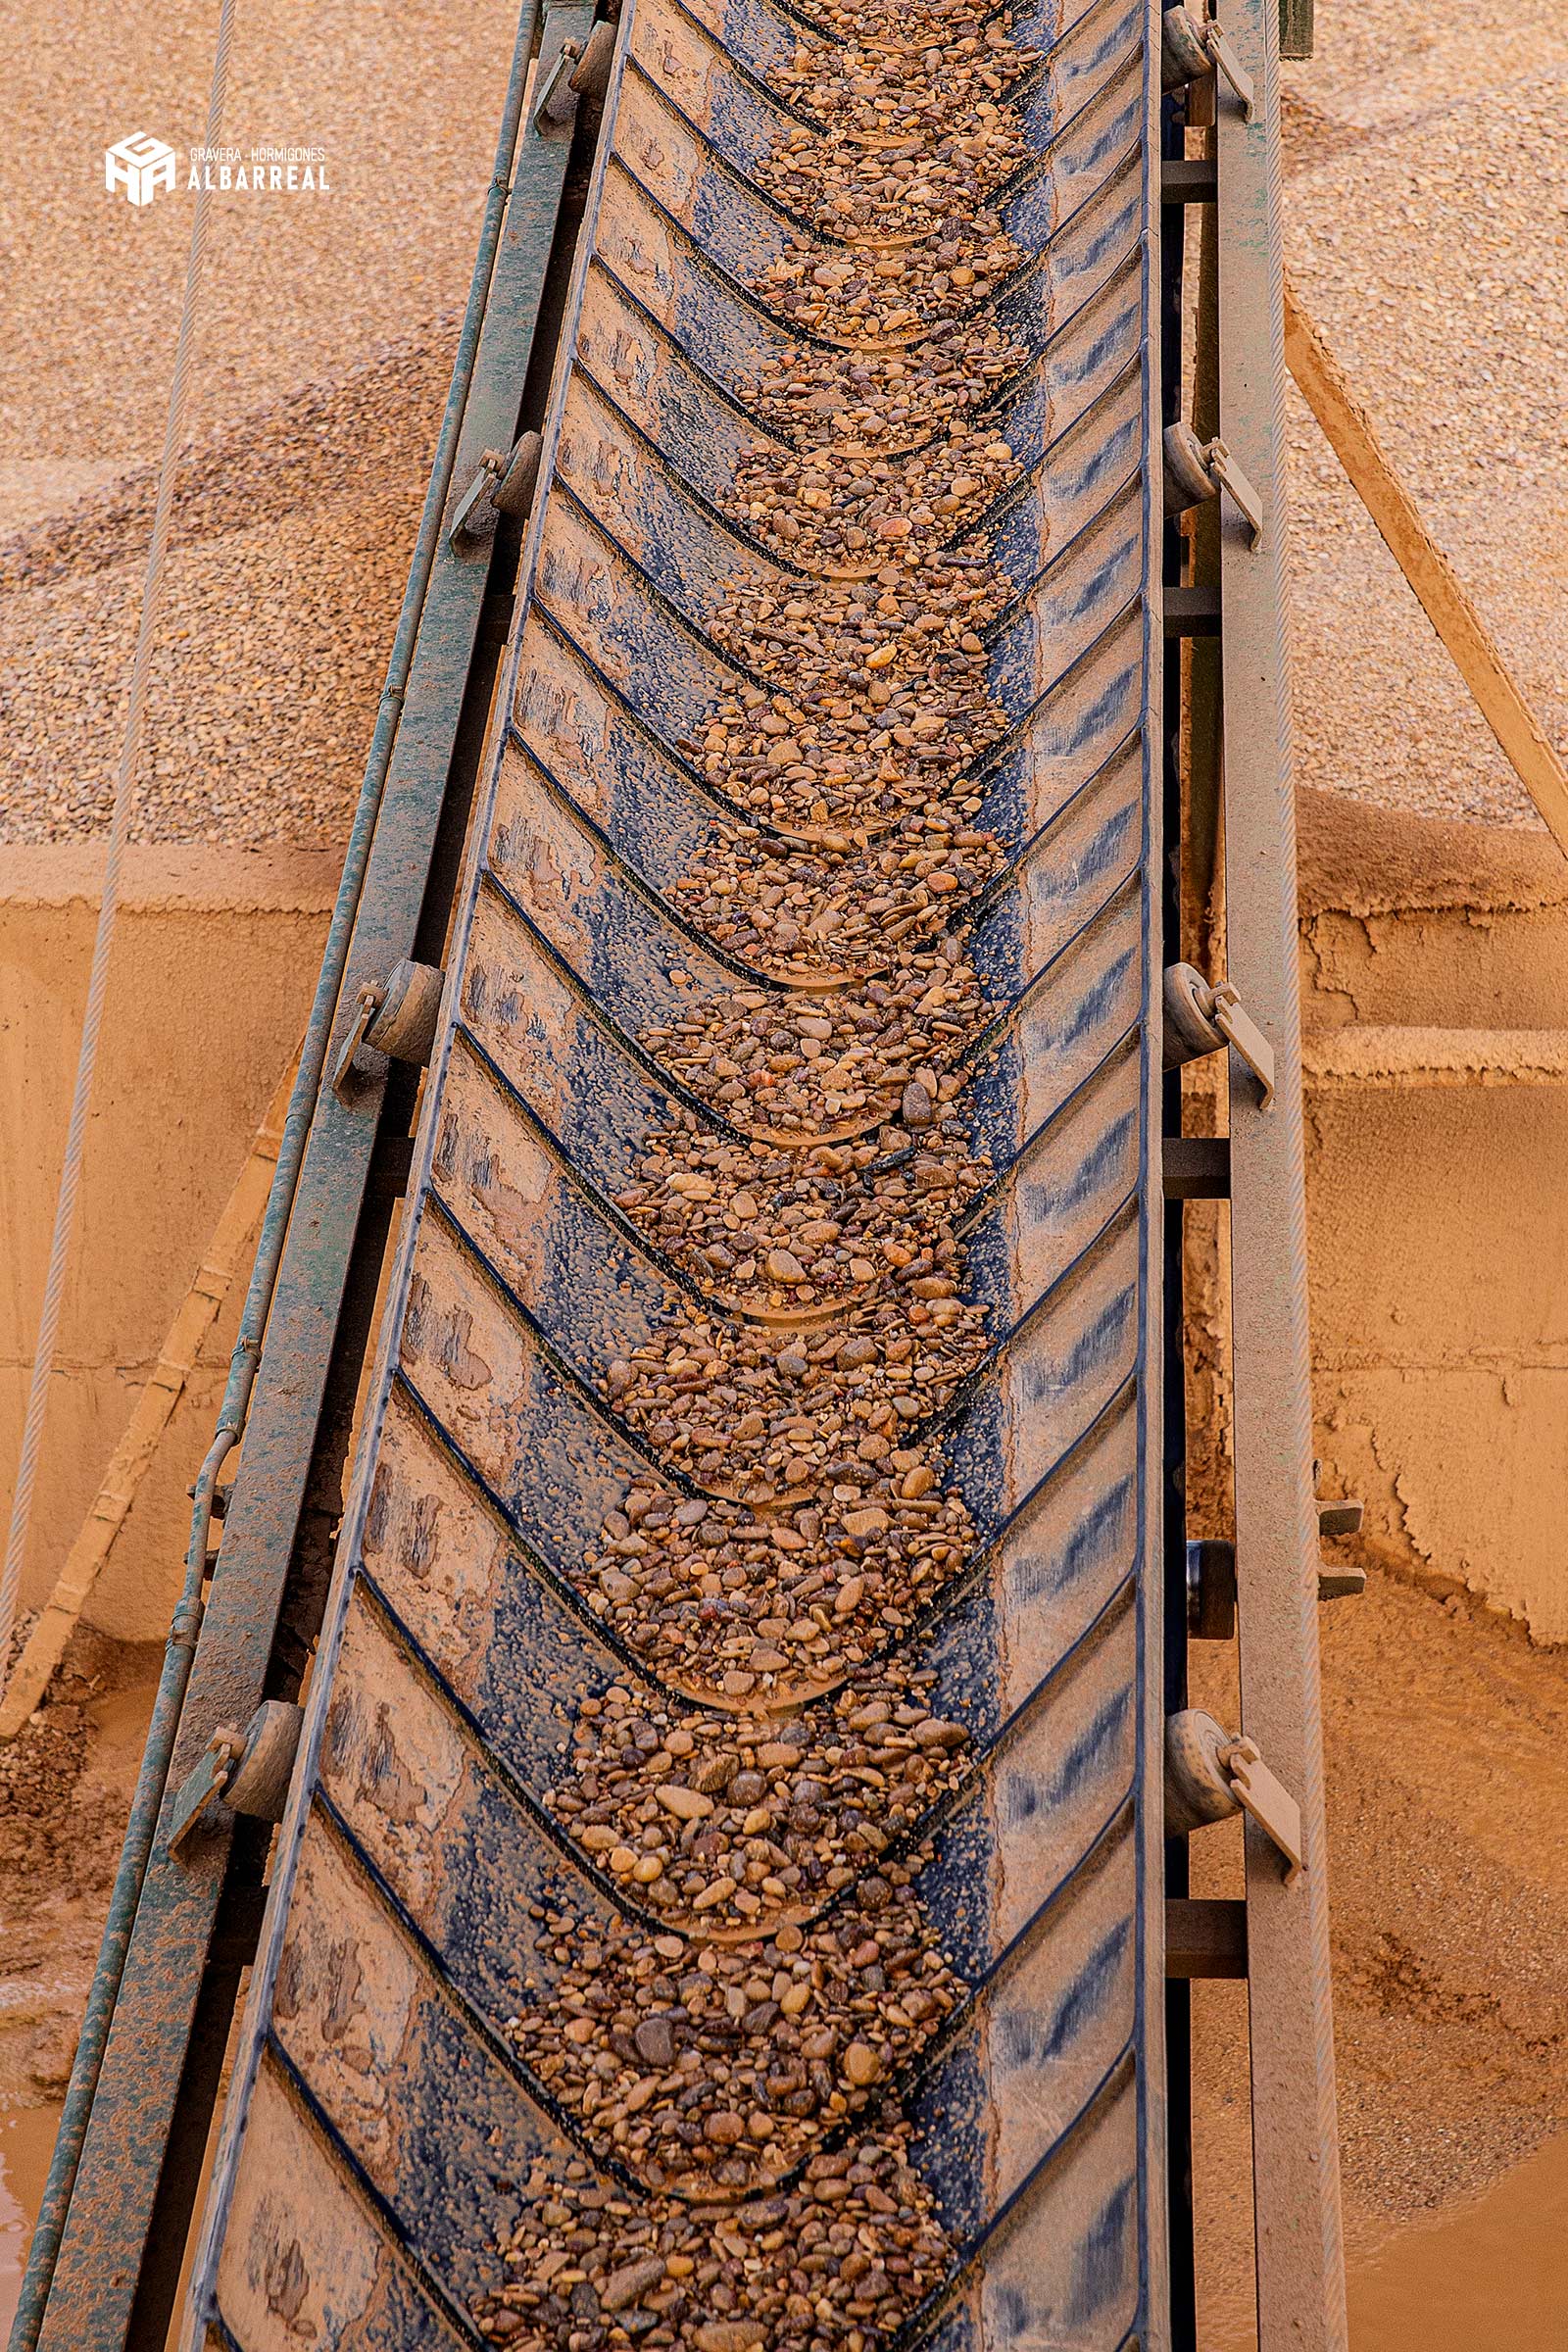 El hormigón en Toledo es de Gravera Hormigones Albarreal. Somos especialistas en los procesos y elaboración de hormigón fresco con áridos y cementos de alta calidad.